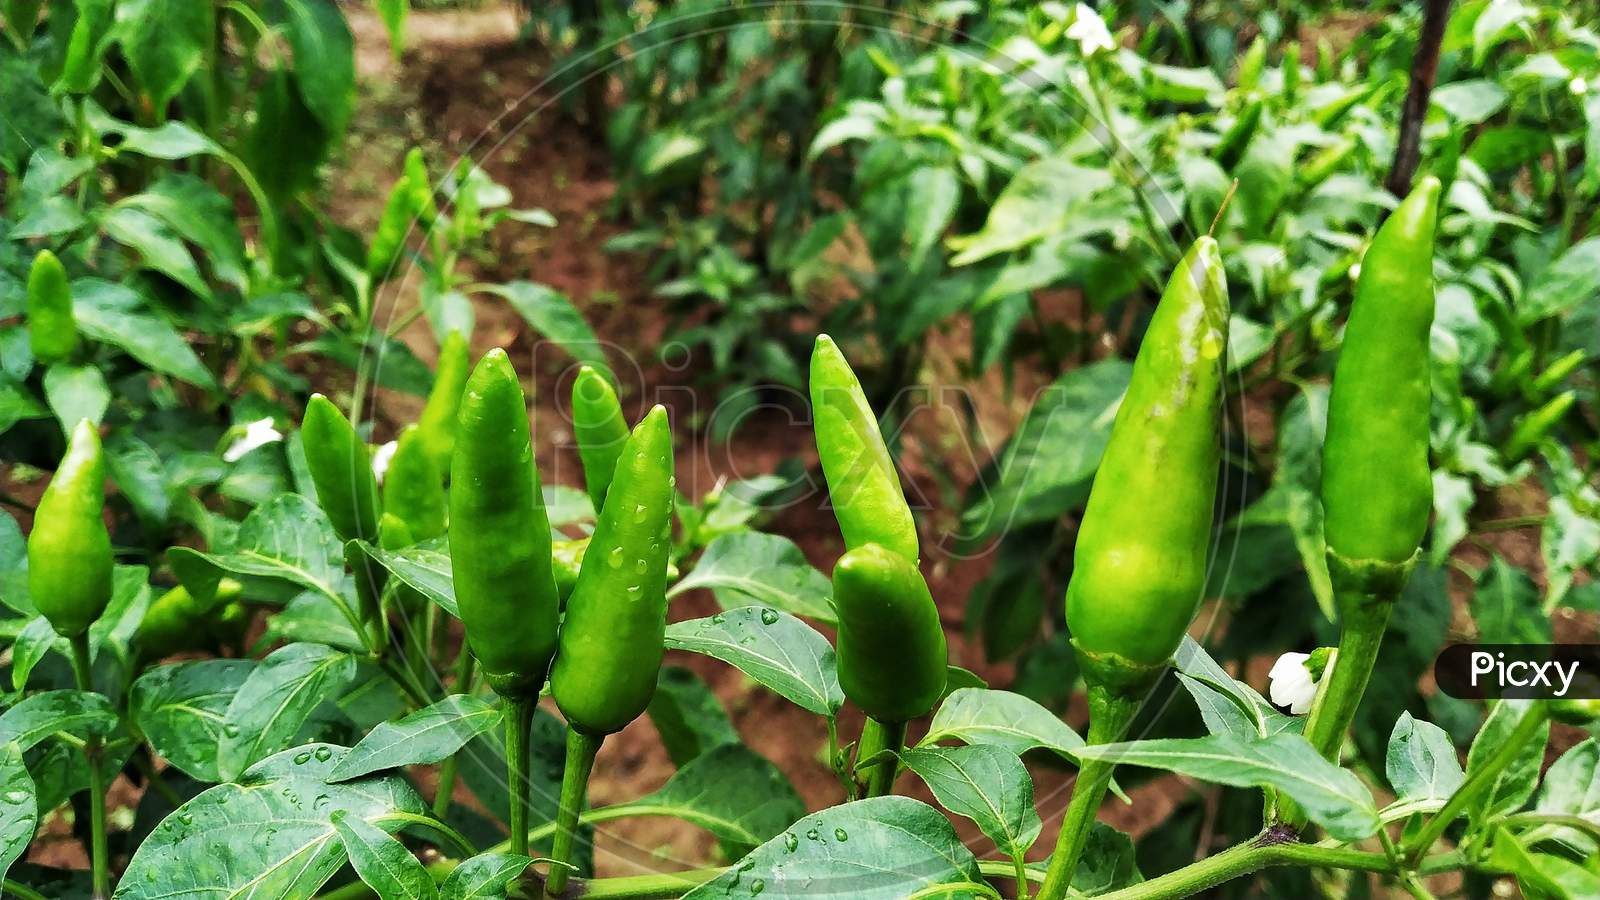 Green Chili In The Farm